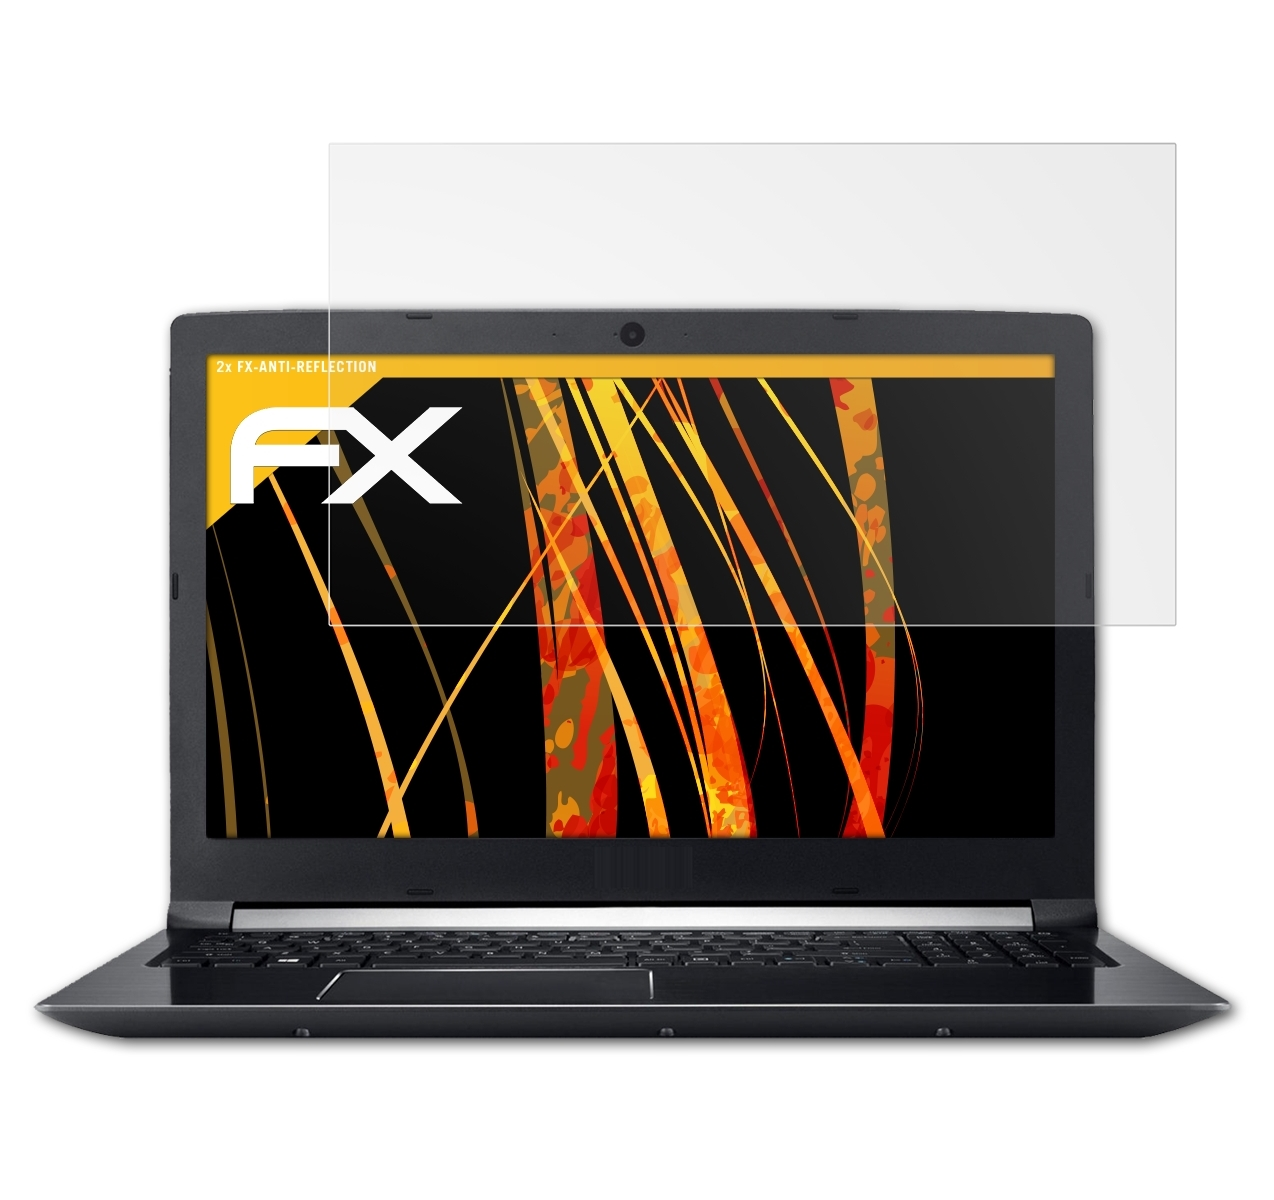 ATFOLIX 2x 7 A715-71G (15,6 inch)) Displayschutz(für Aspire Acer FX-Antireflex